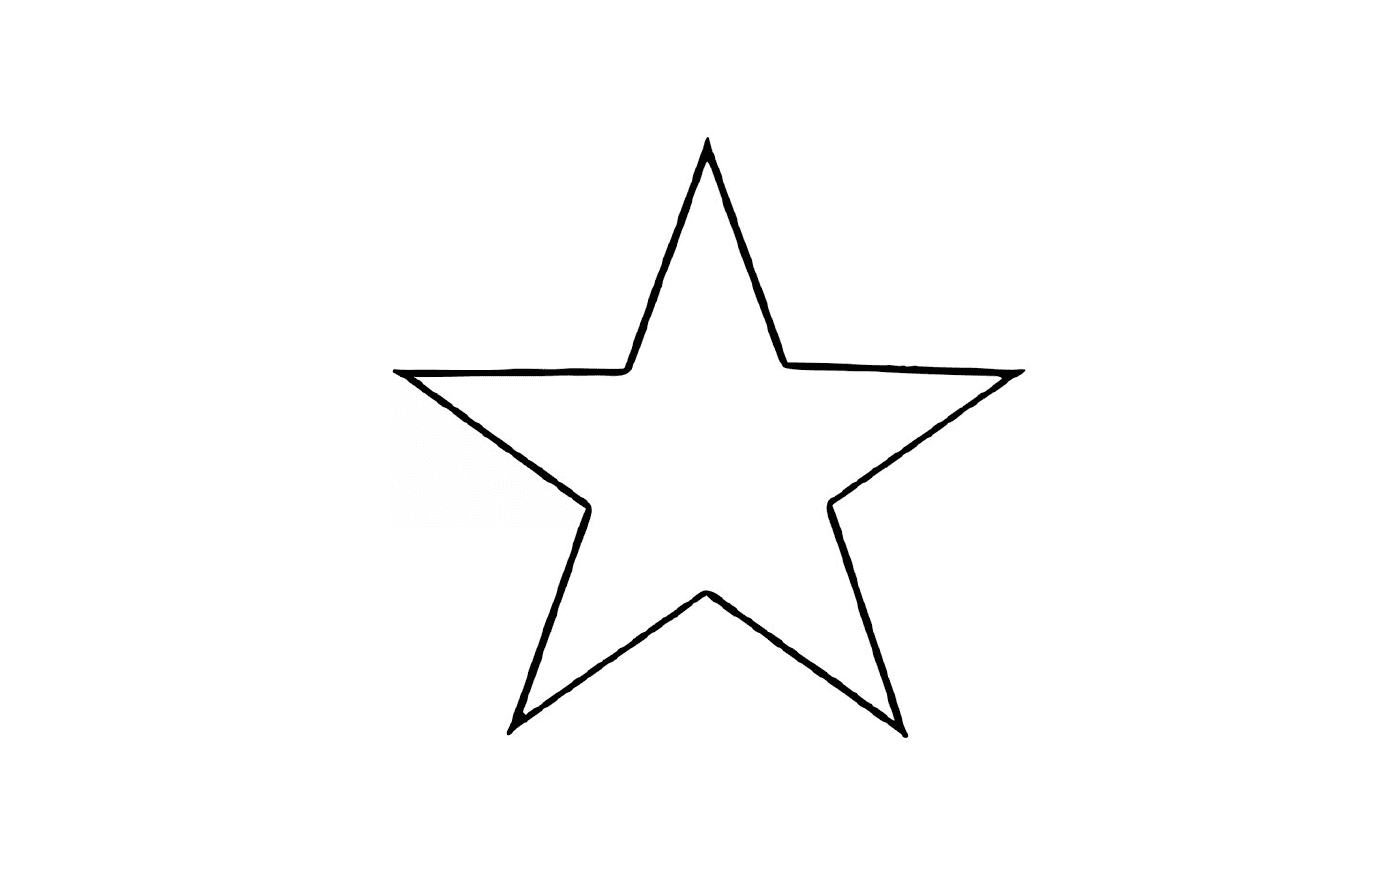  A star 